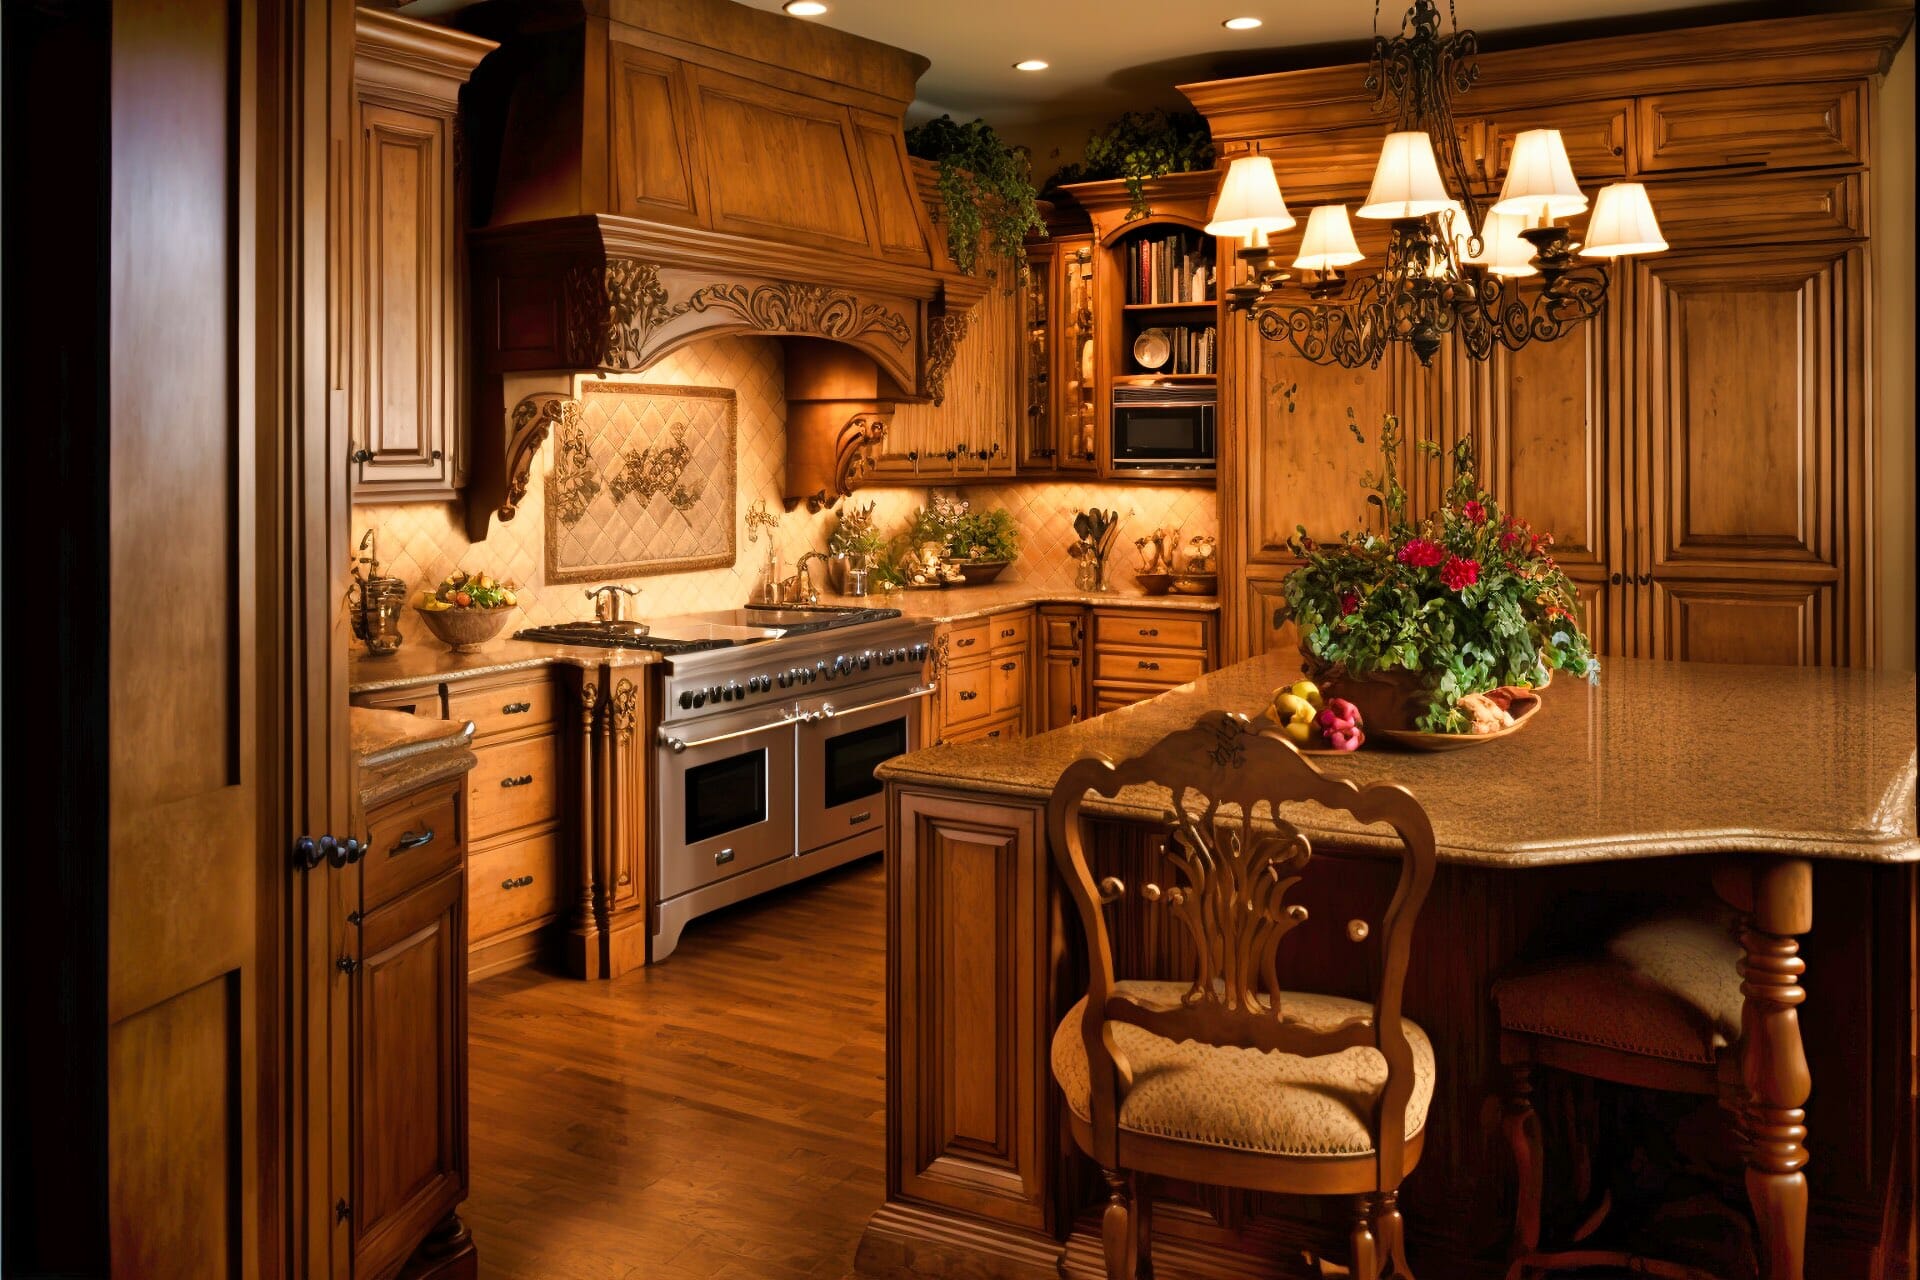 Eine Gemütliche Küche Mit Warmen Eichenmöbeln, Einer Strukturierten Decke Und Einem Verzierten Kronleuchter.